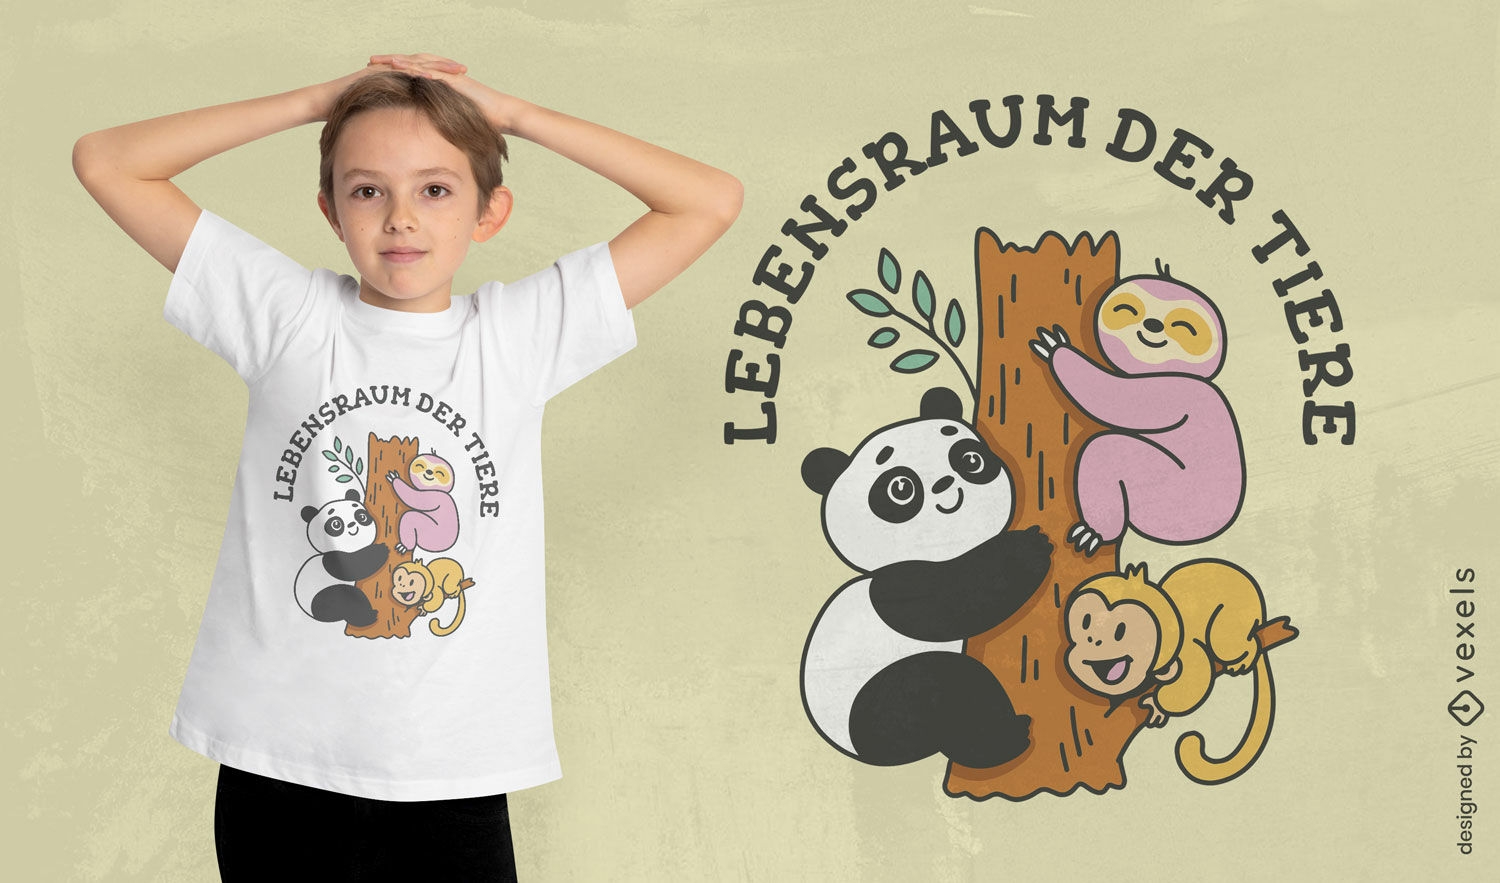 Animais fofos em um design de camiseta de árvore